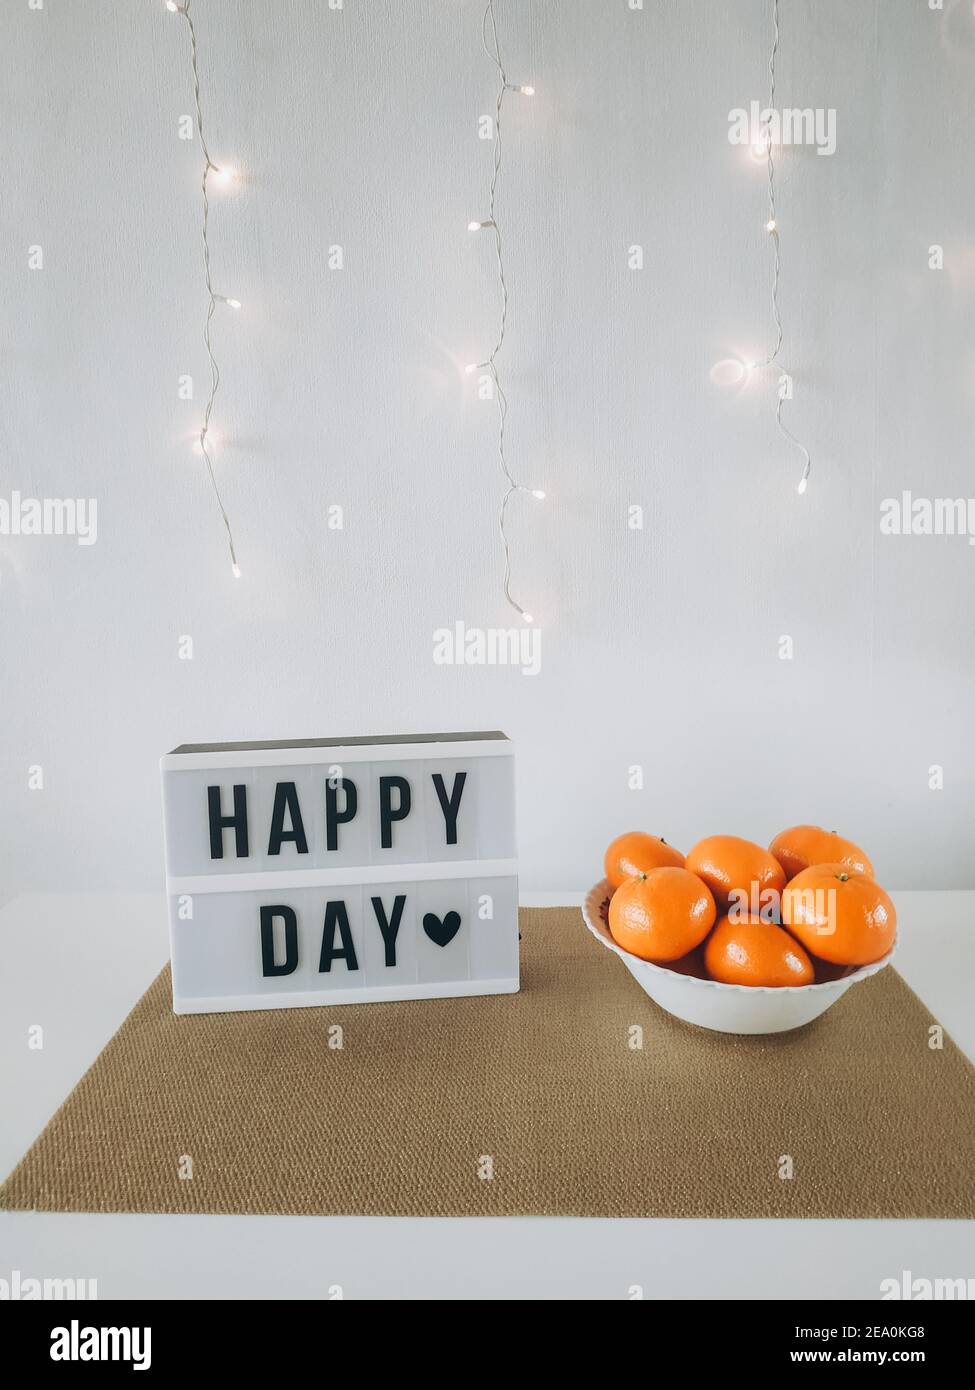 HAPPY DAY Wort auf Leuchtkasten mit Mandarinen an der Wand mit Licht Hintergrund. Gemütliches Haus compozition. Stockfoto